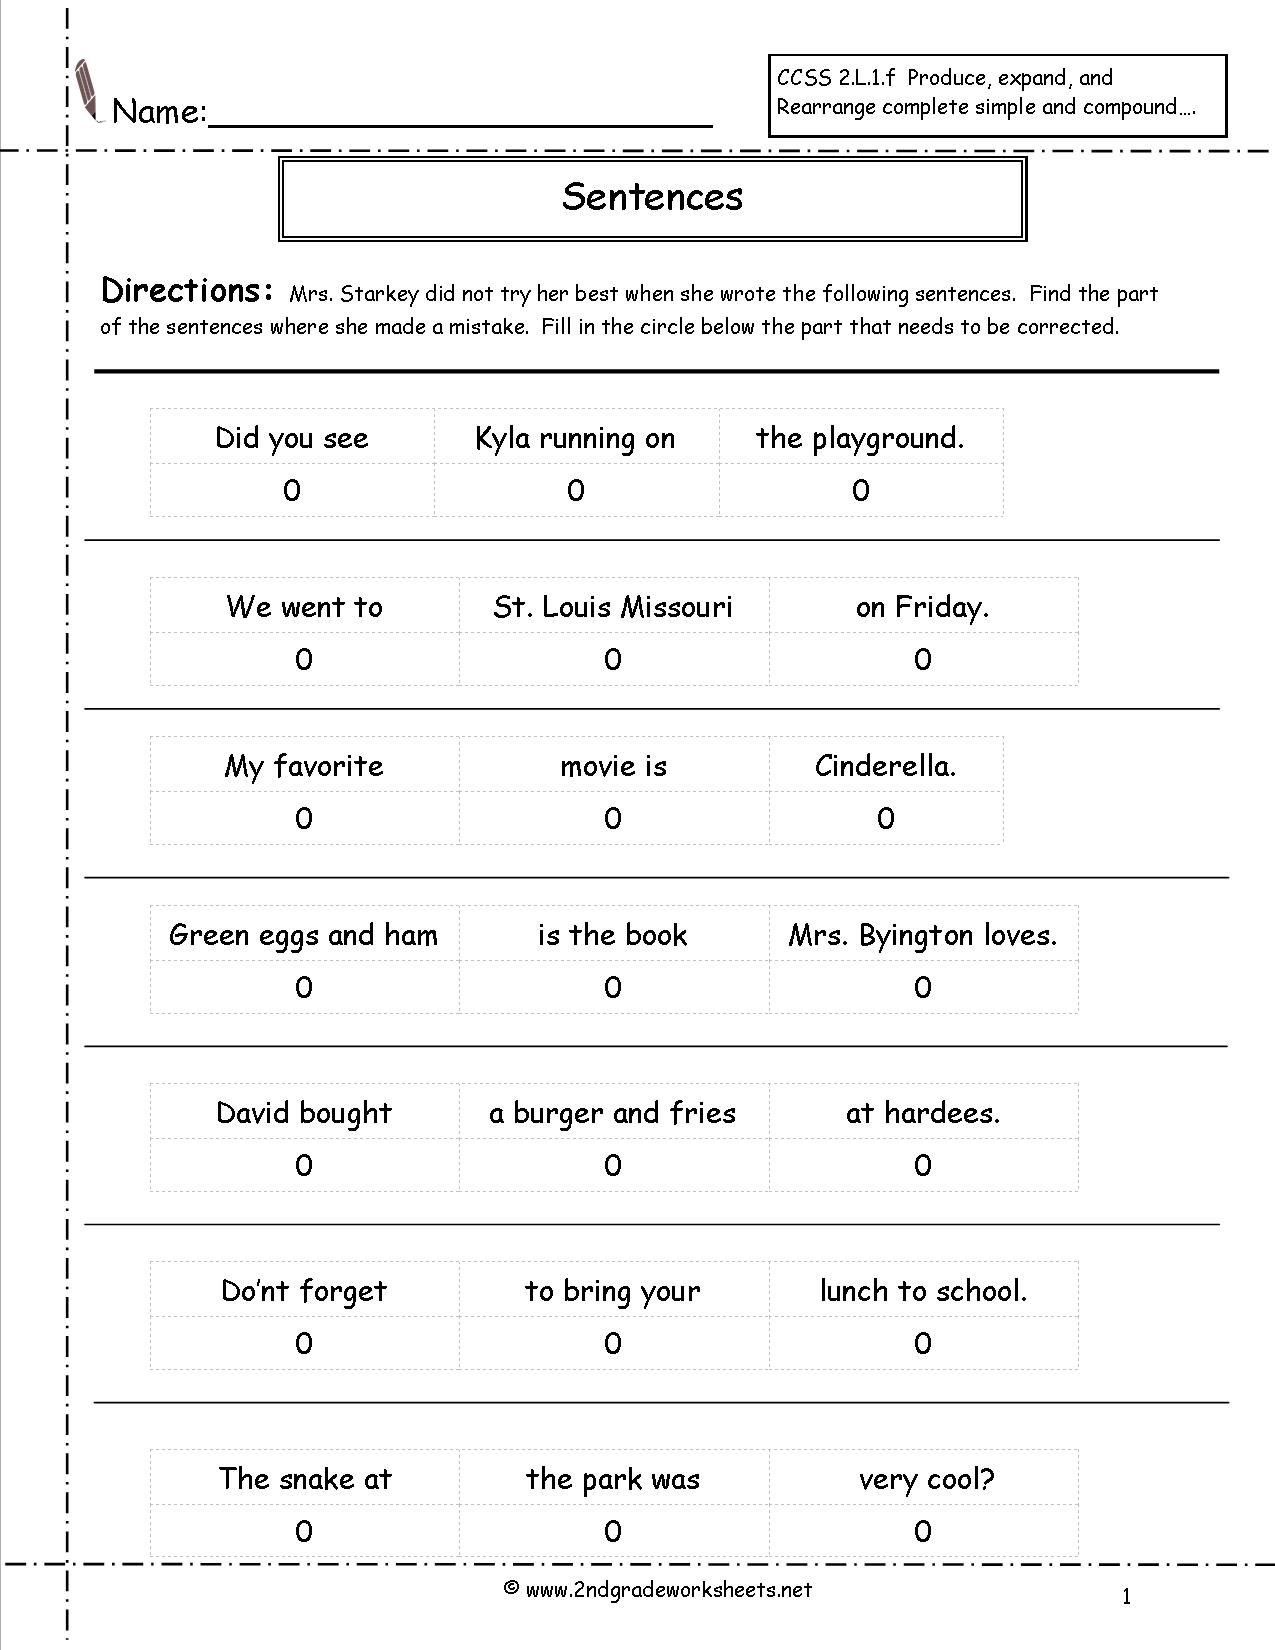 15-best-images-of-2nd-grade-sentence-correction-worksheets-2nd-grade